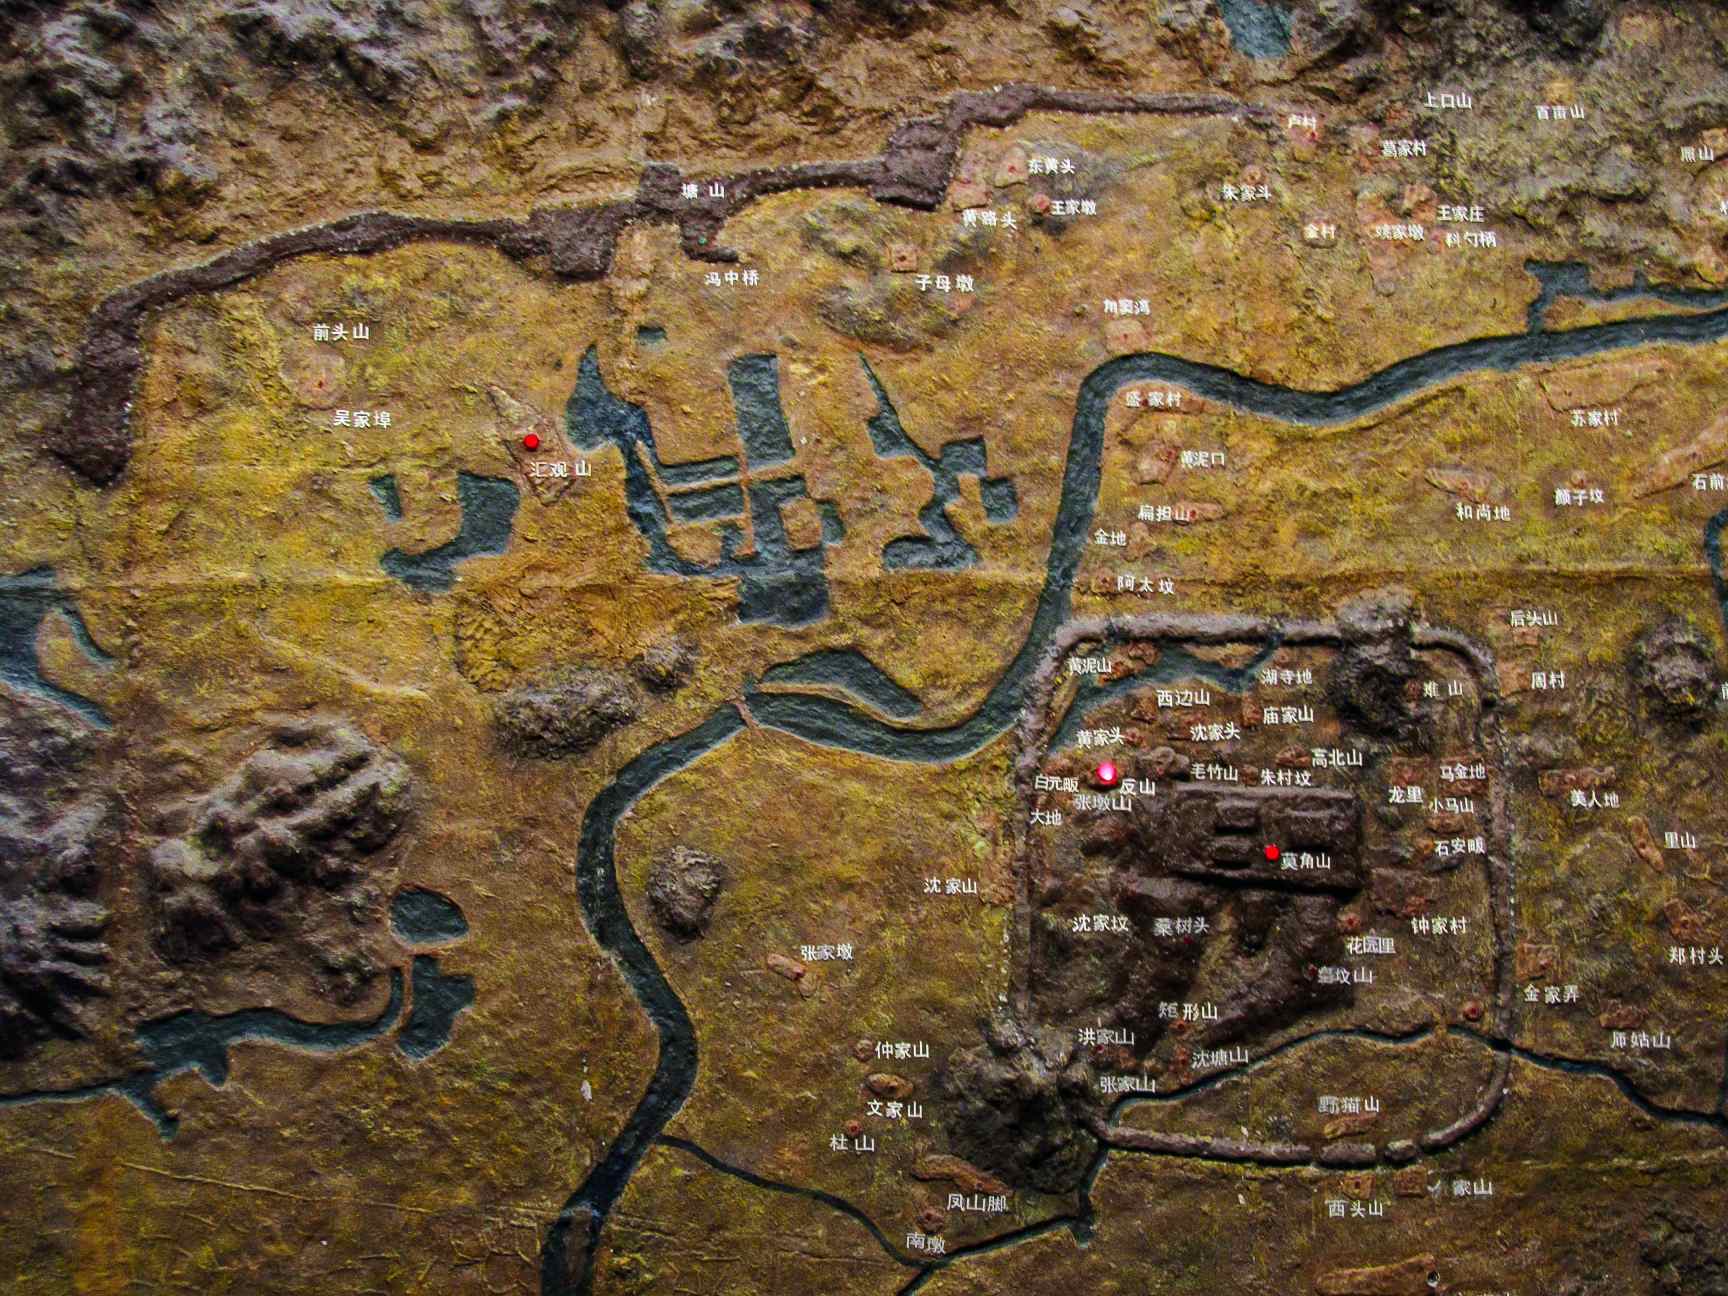 Modell der antiken Stadt Liangzhu, ausgestellt im Liangzhu-Museum.